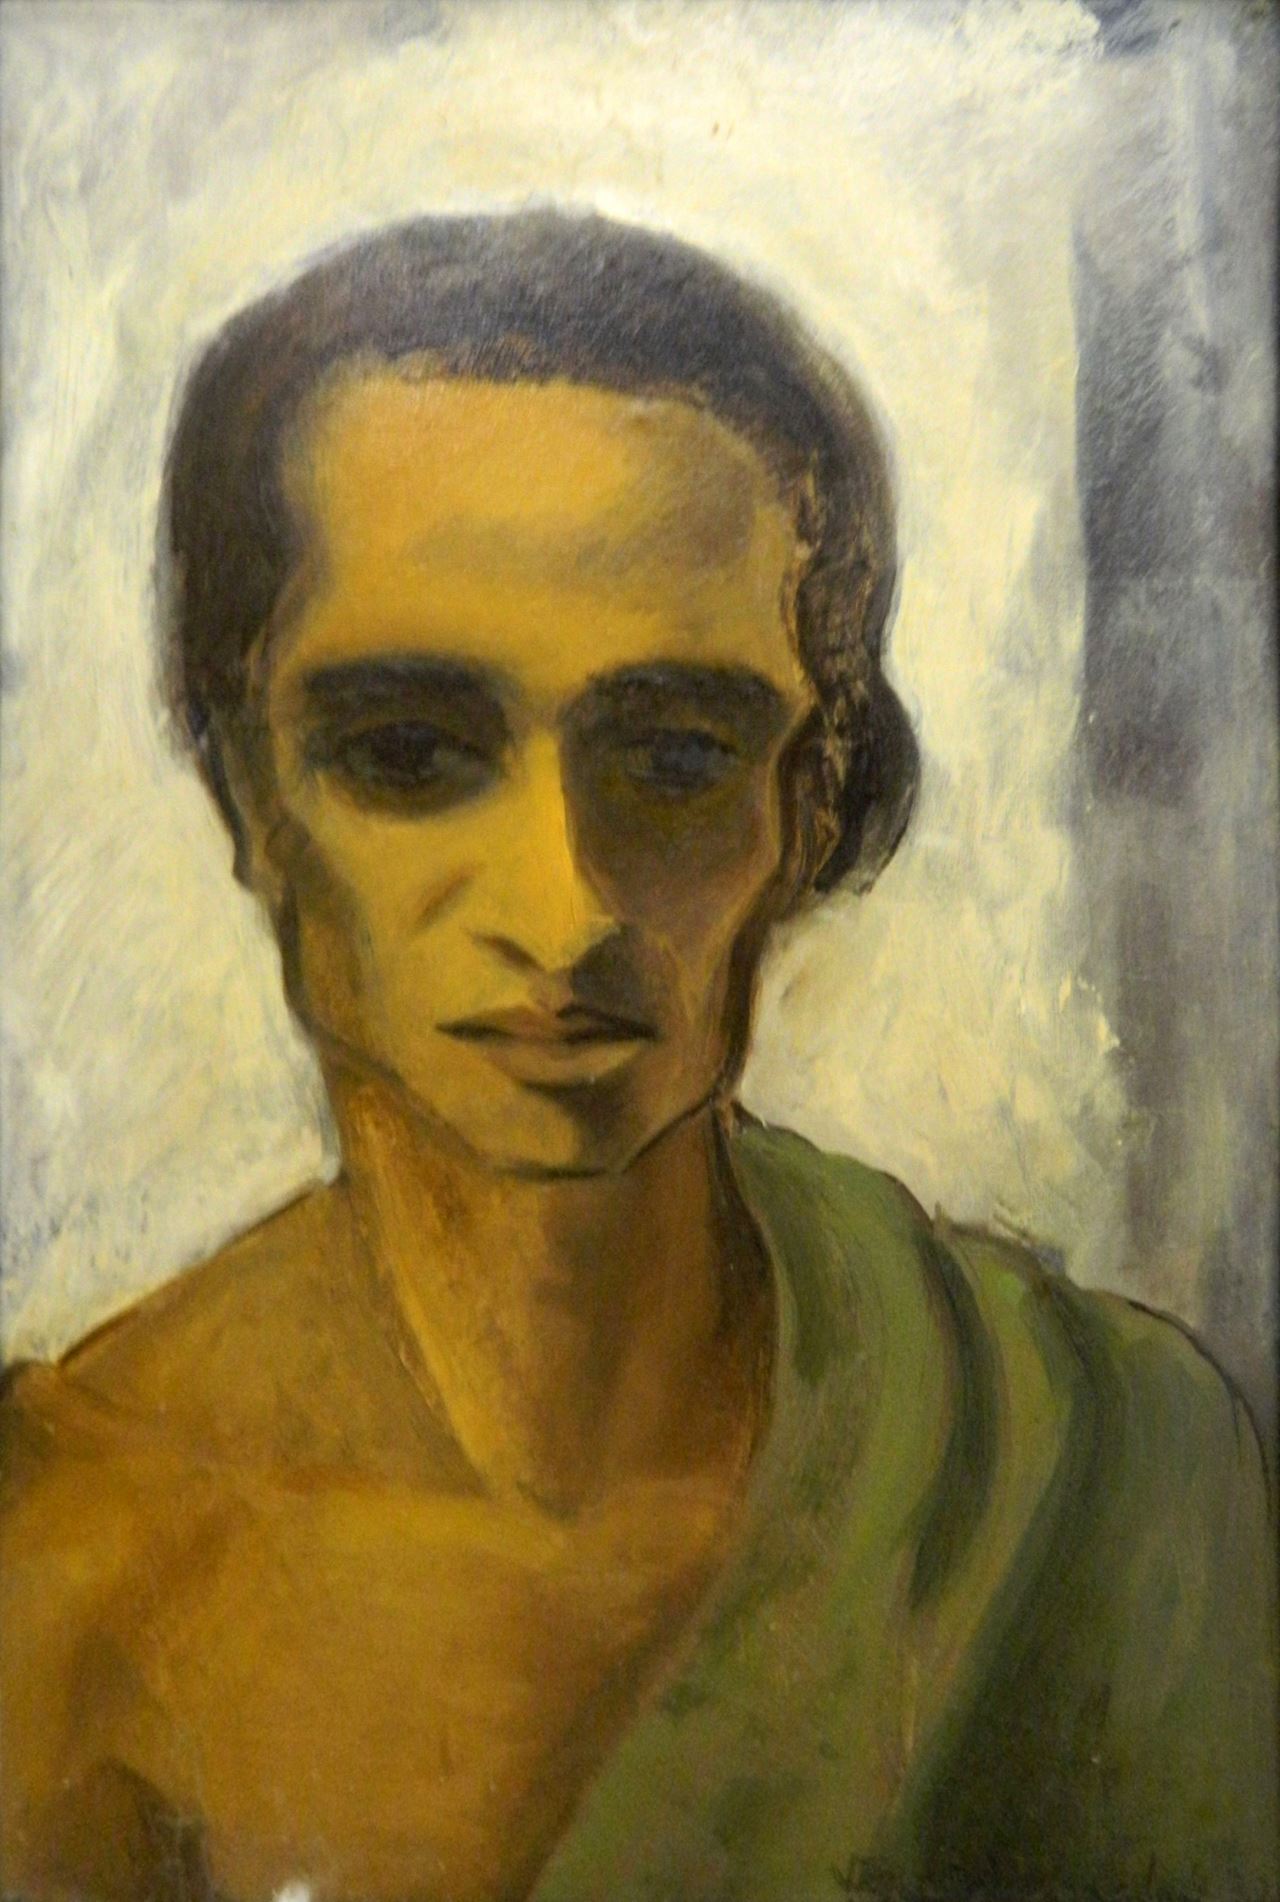 Věra Jičínská, Podobizna mladšího bratra Udaye Shankara Rajendry, 1932, olej na plátně, Vlastivědné muzeum Dobruška, inv. č. 19A 10.805